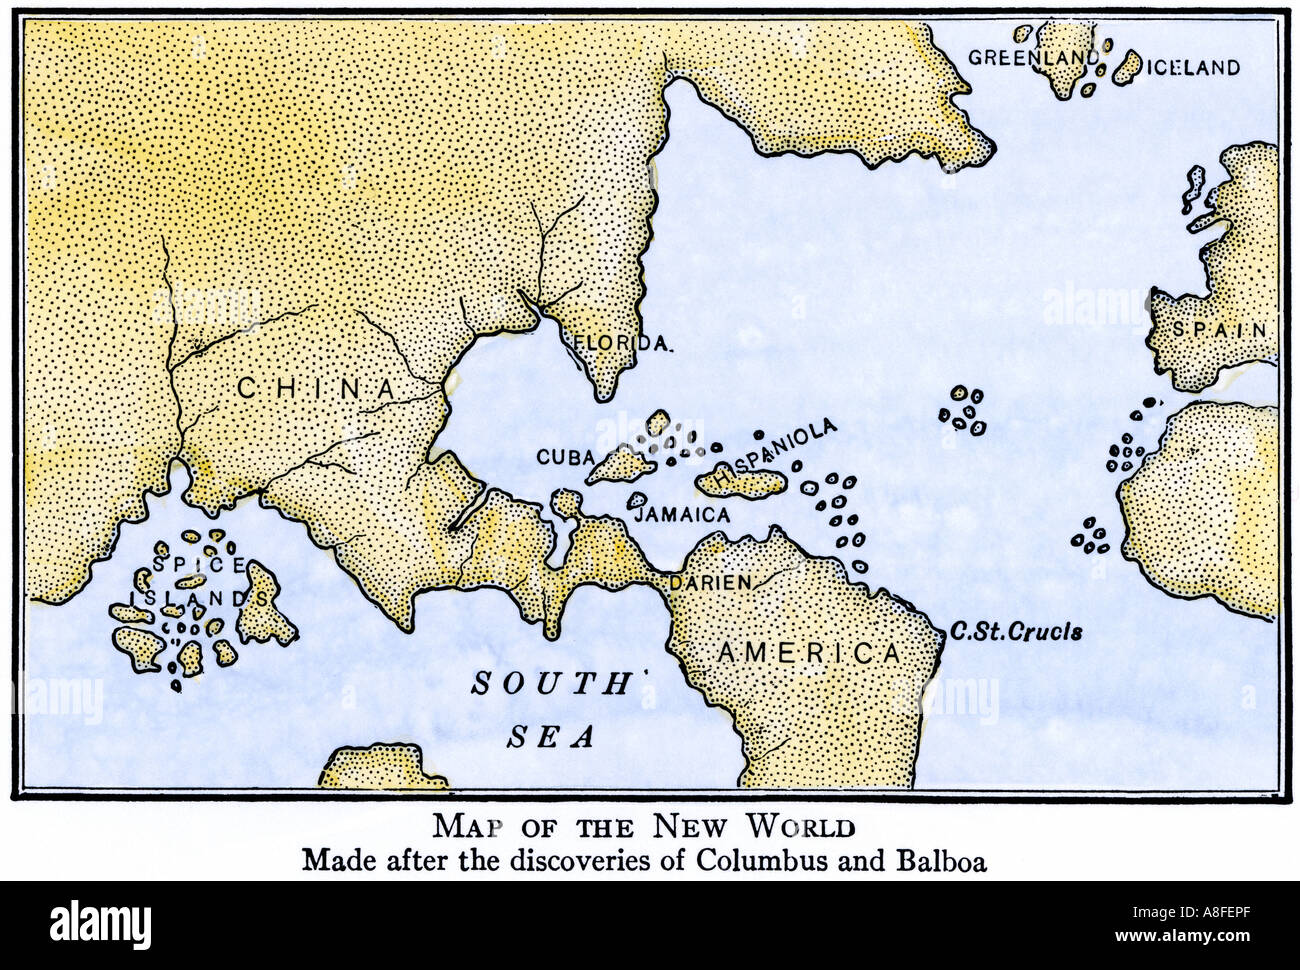 Nuova mappa del mondo che mostra il Sud America attaccata in Asia come assunta dopo le scoperte di Colombo e Balboa. Colorate a mano la xilografia Foto Stock